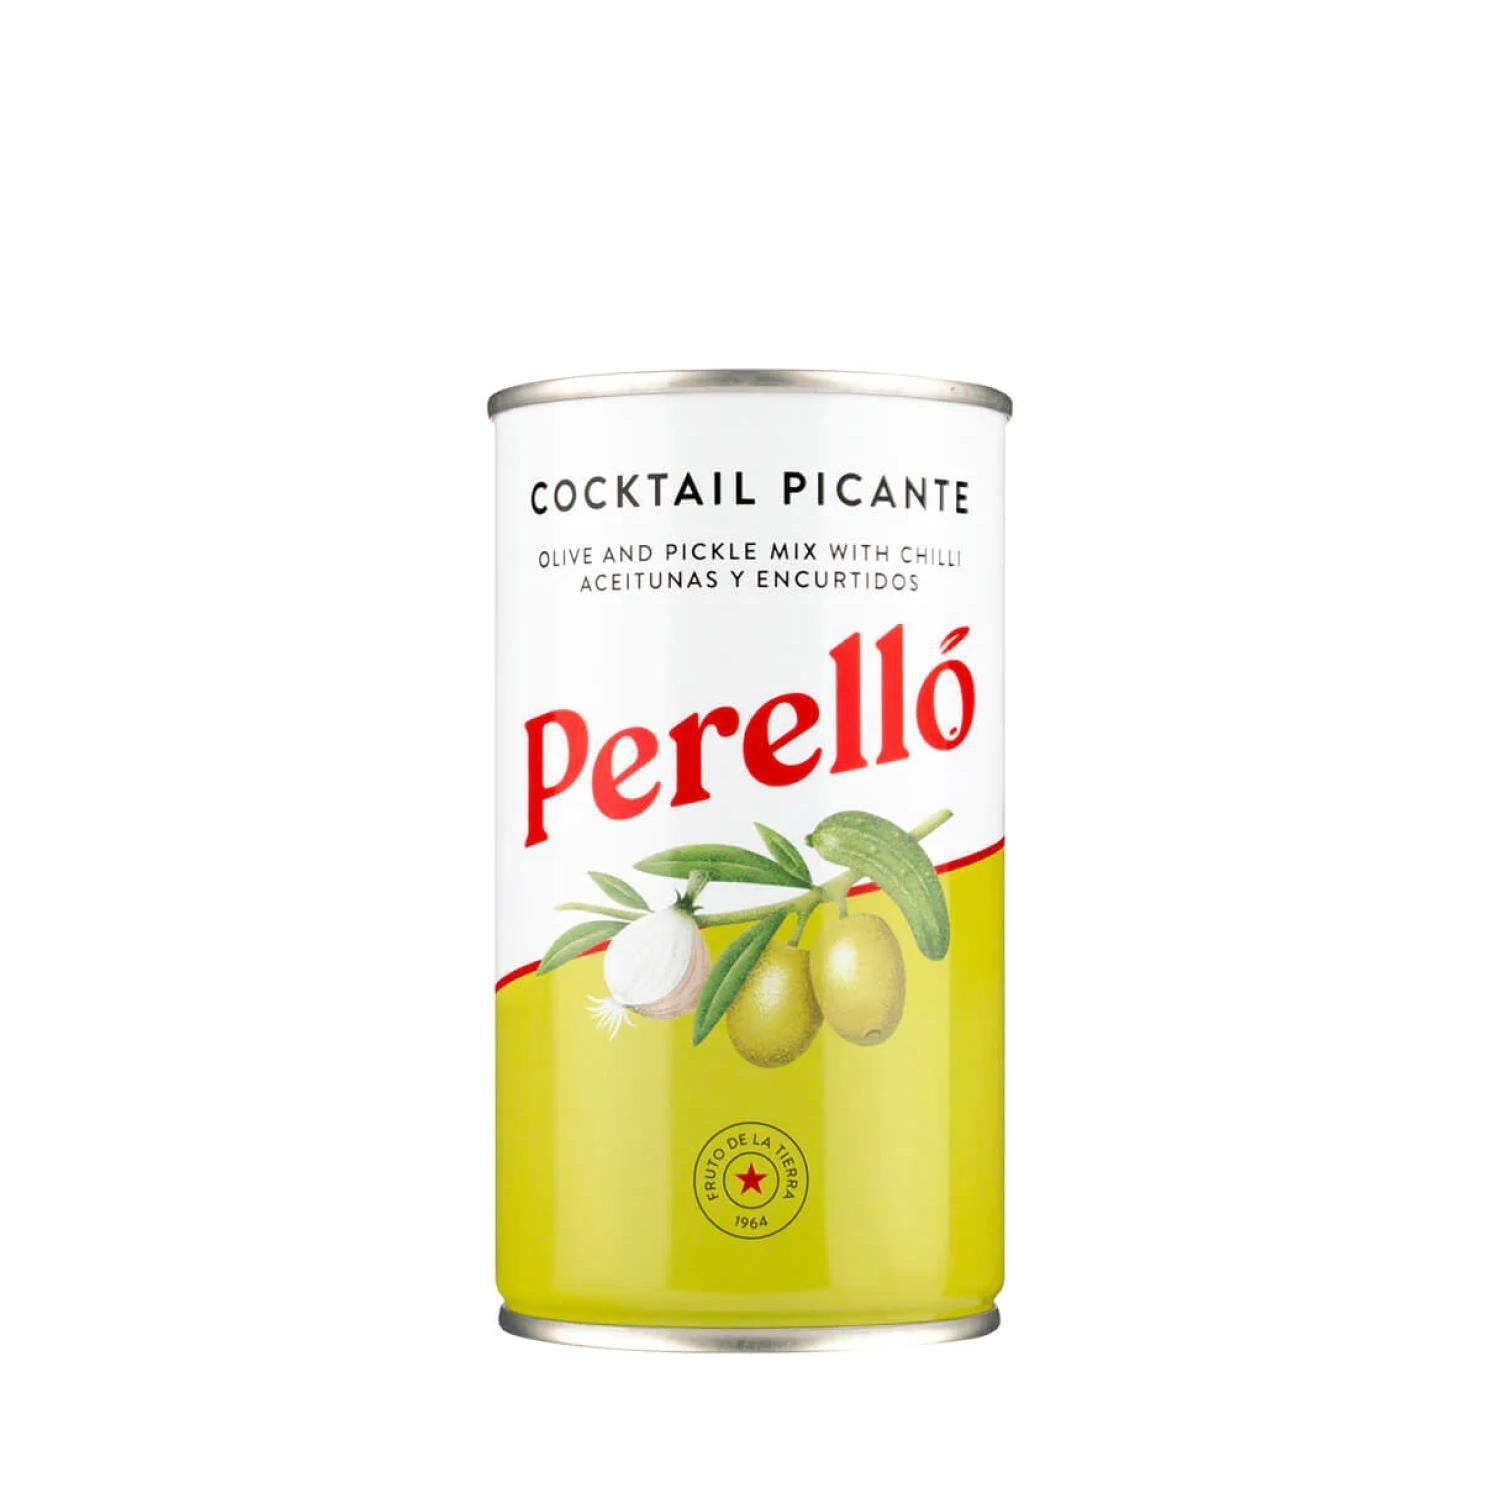 Perello - Cocktail Picante Olives